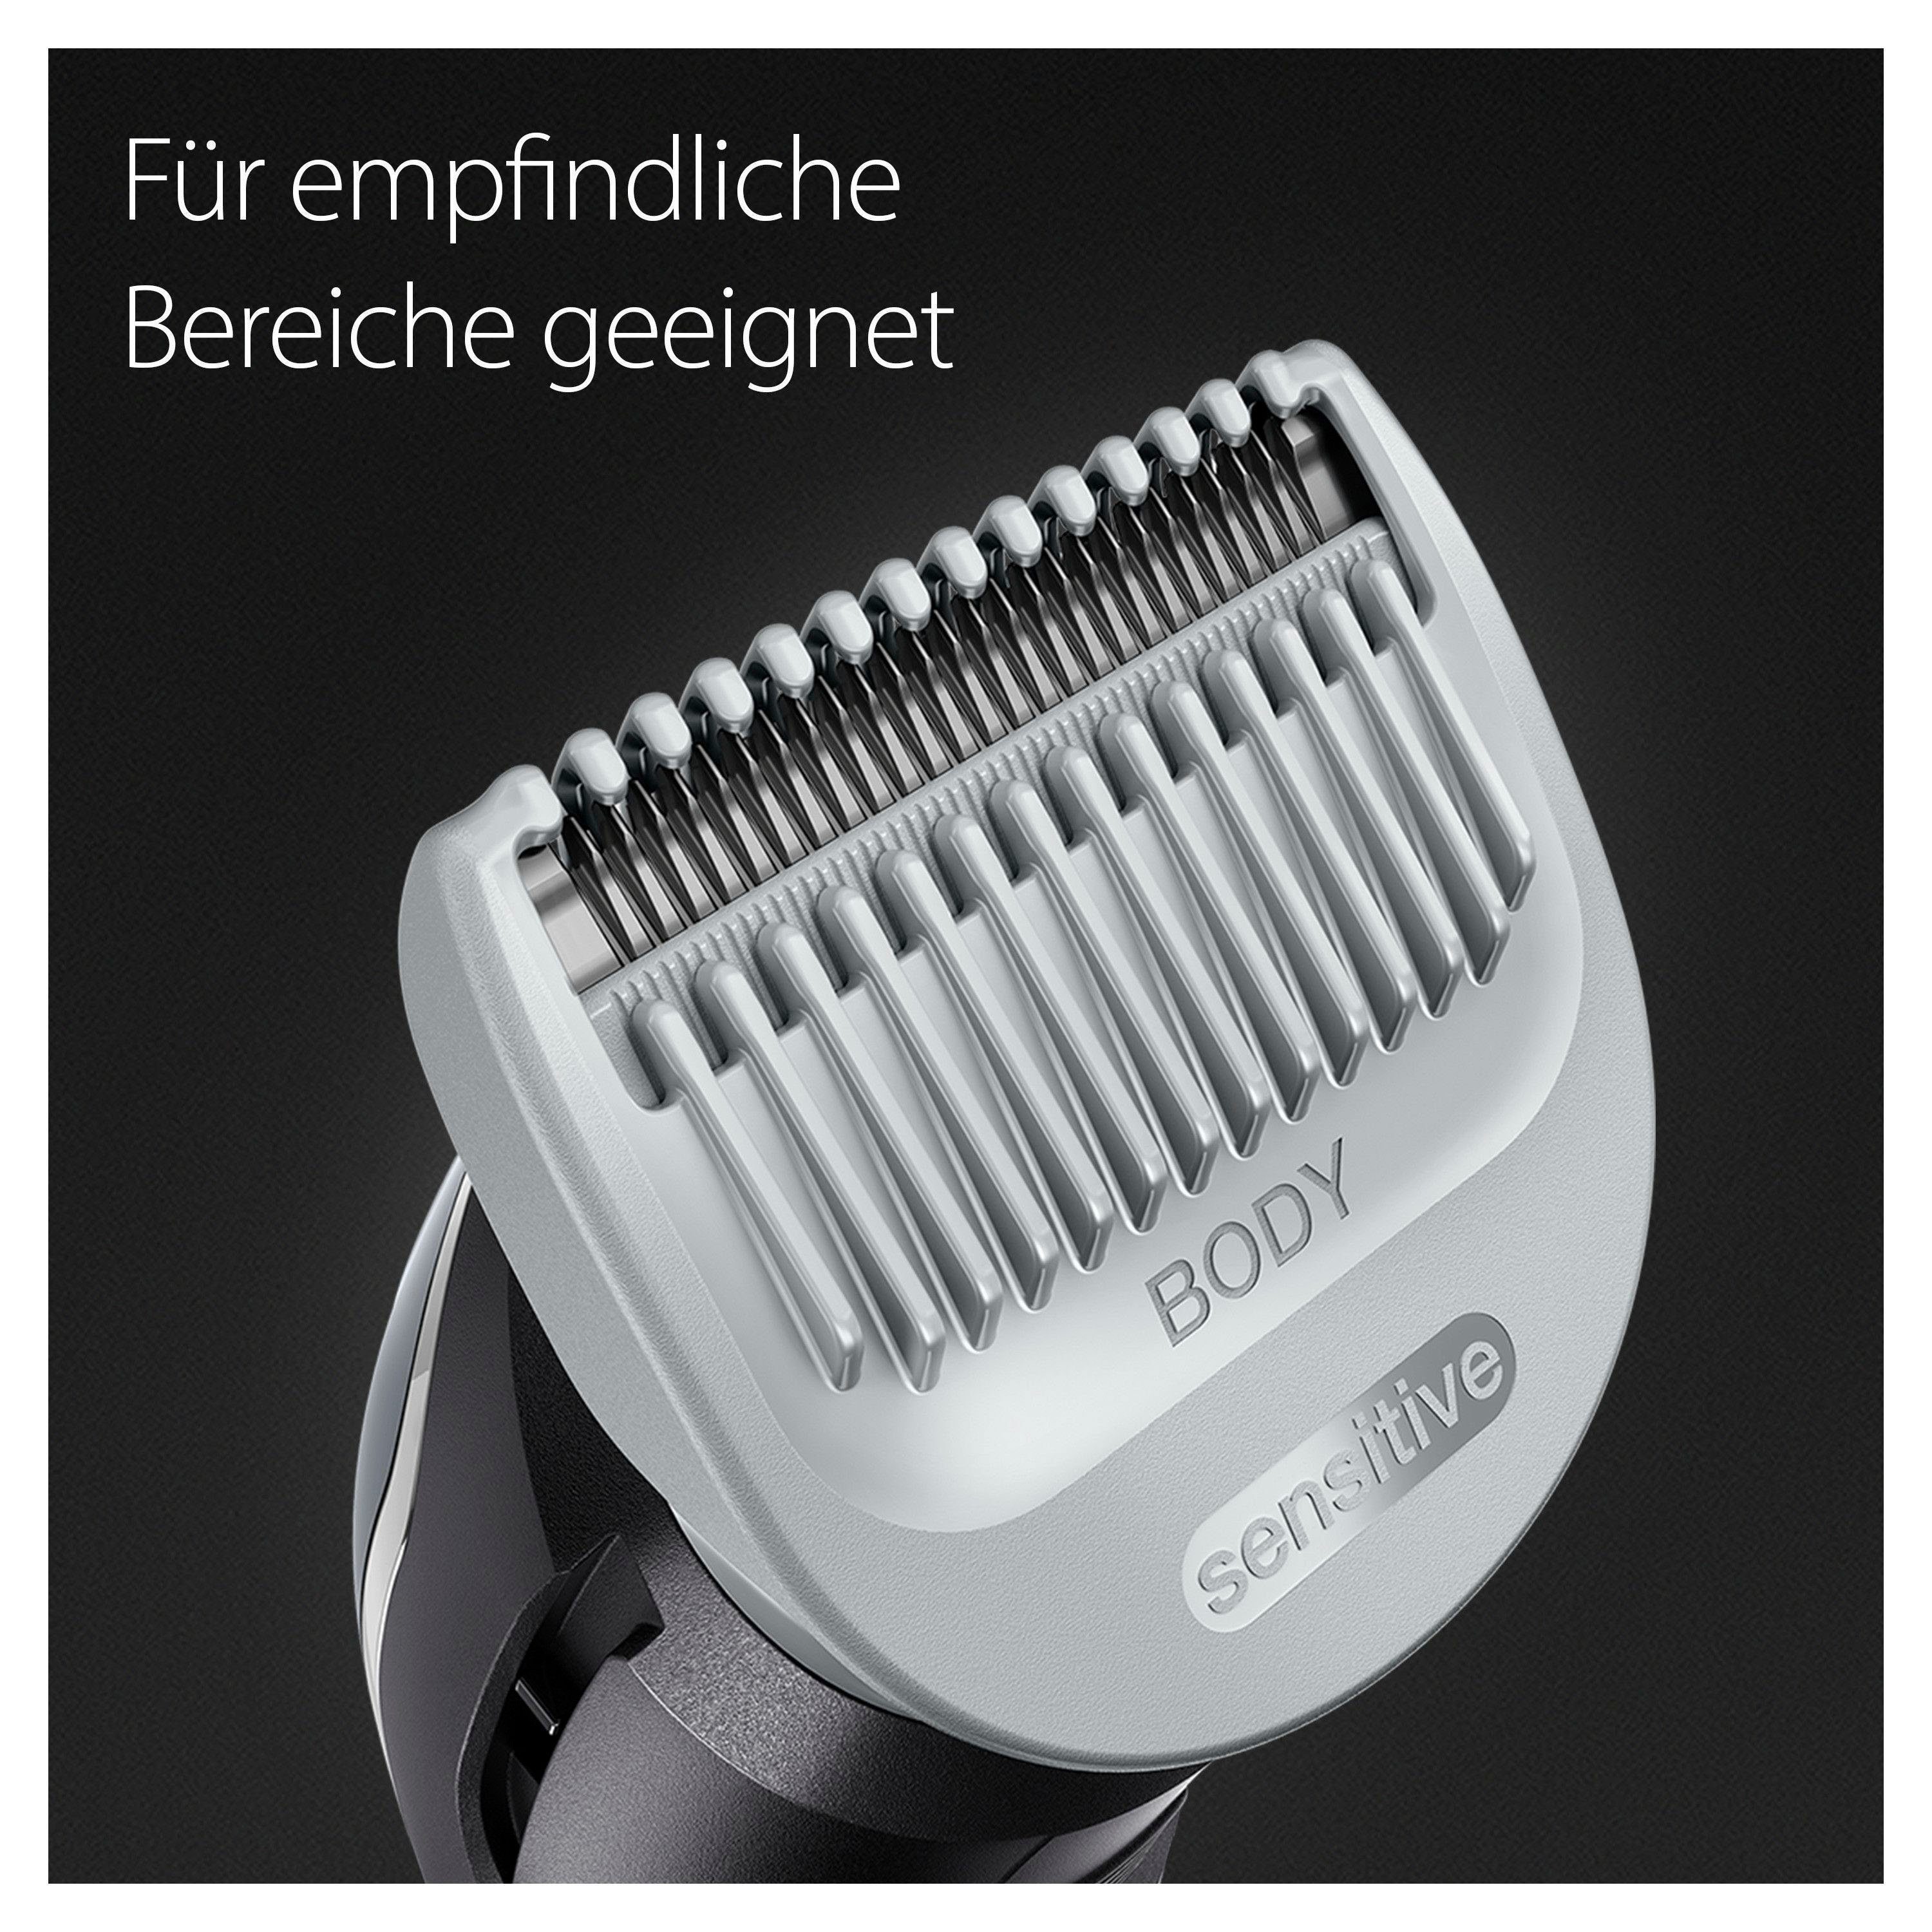 Braun BG3340, Abwaschbar Haarschneider SkinShield-Technologie, Bodygroomer